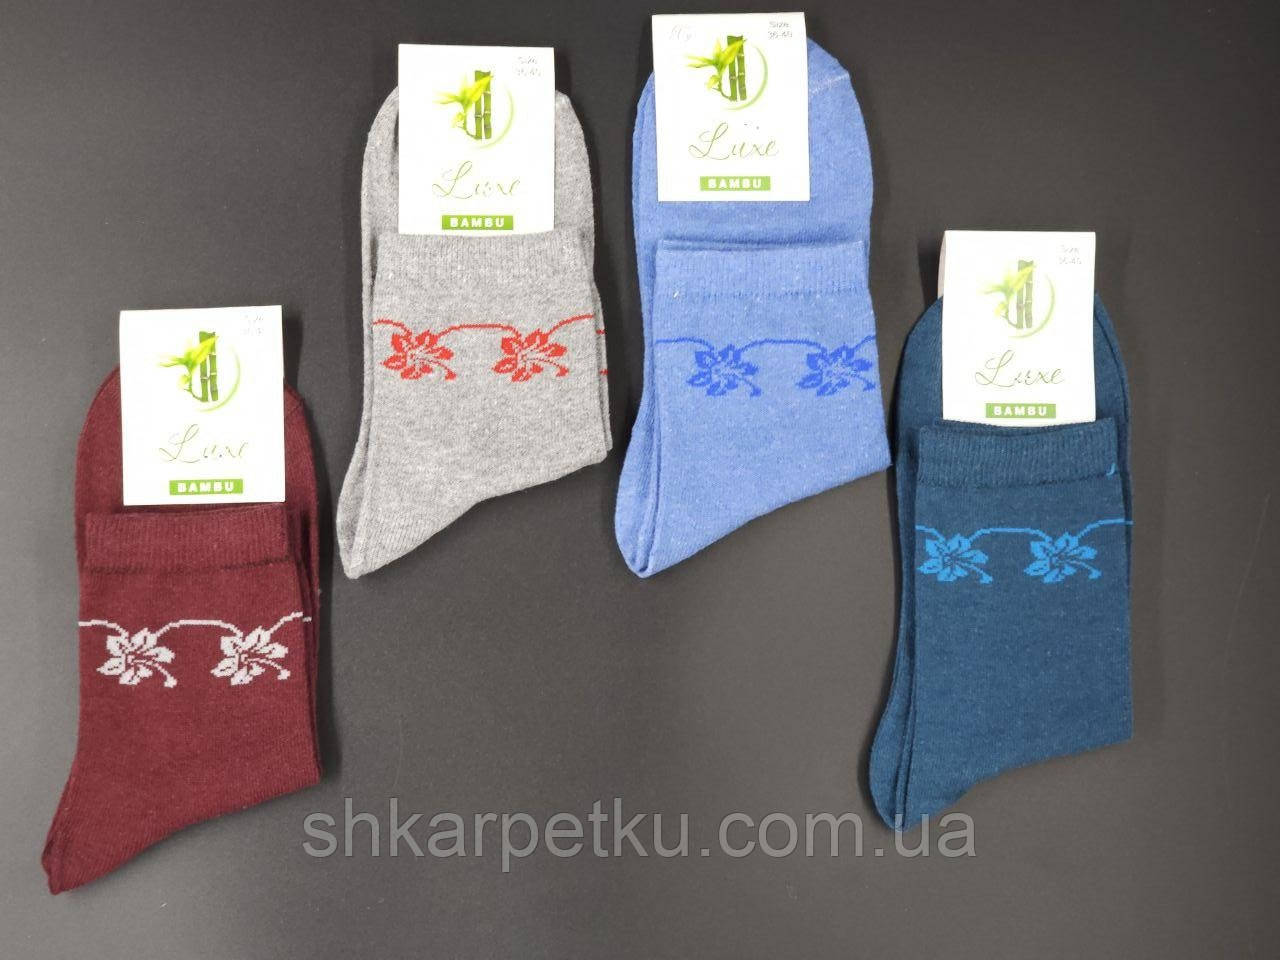 Жіночі шкарпетки середні стрейчеві Житомир Люкс з Малюнком квітів 36-40 12 шт в уп мікс кольорів